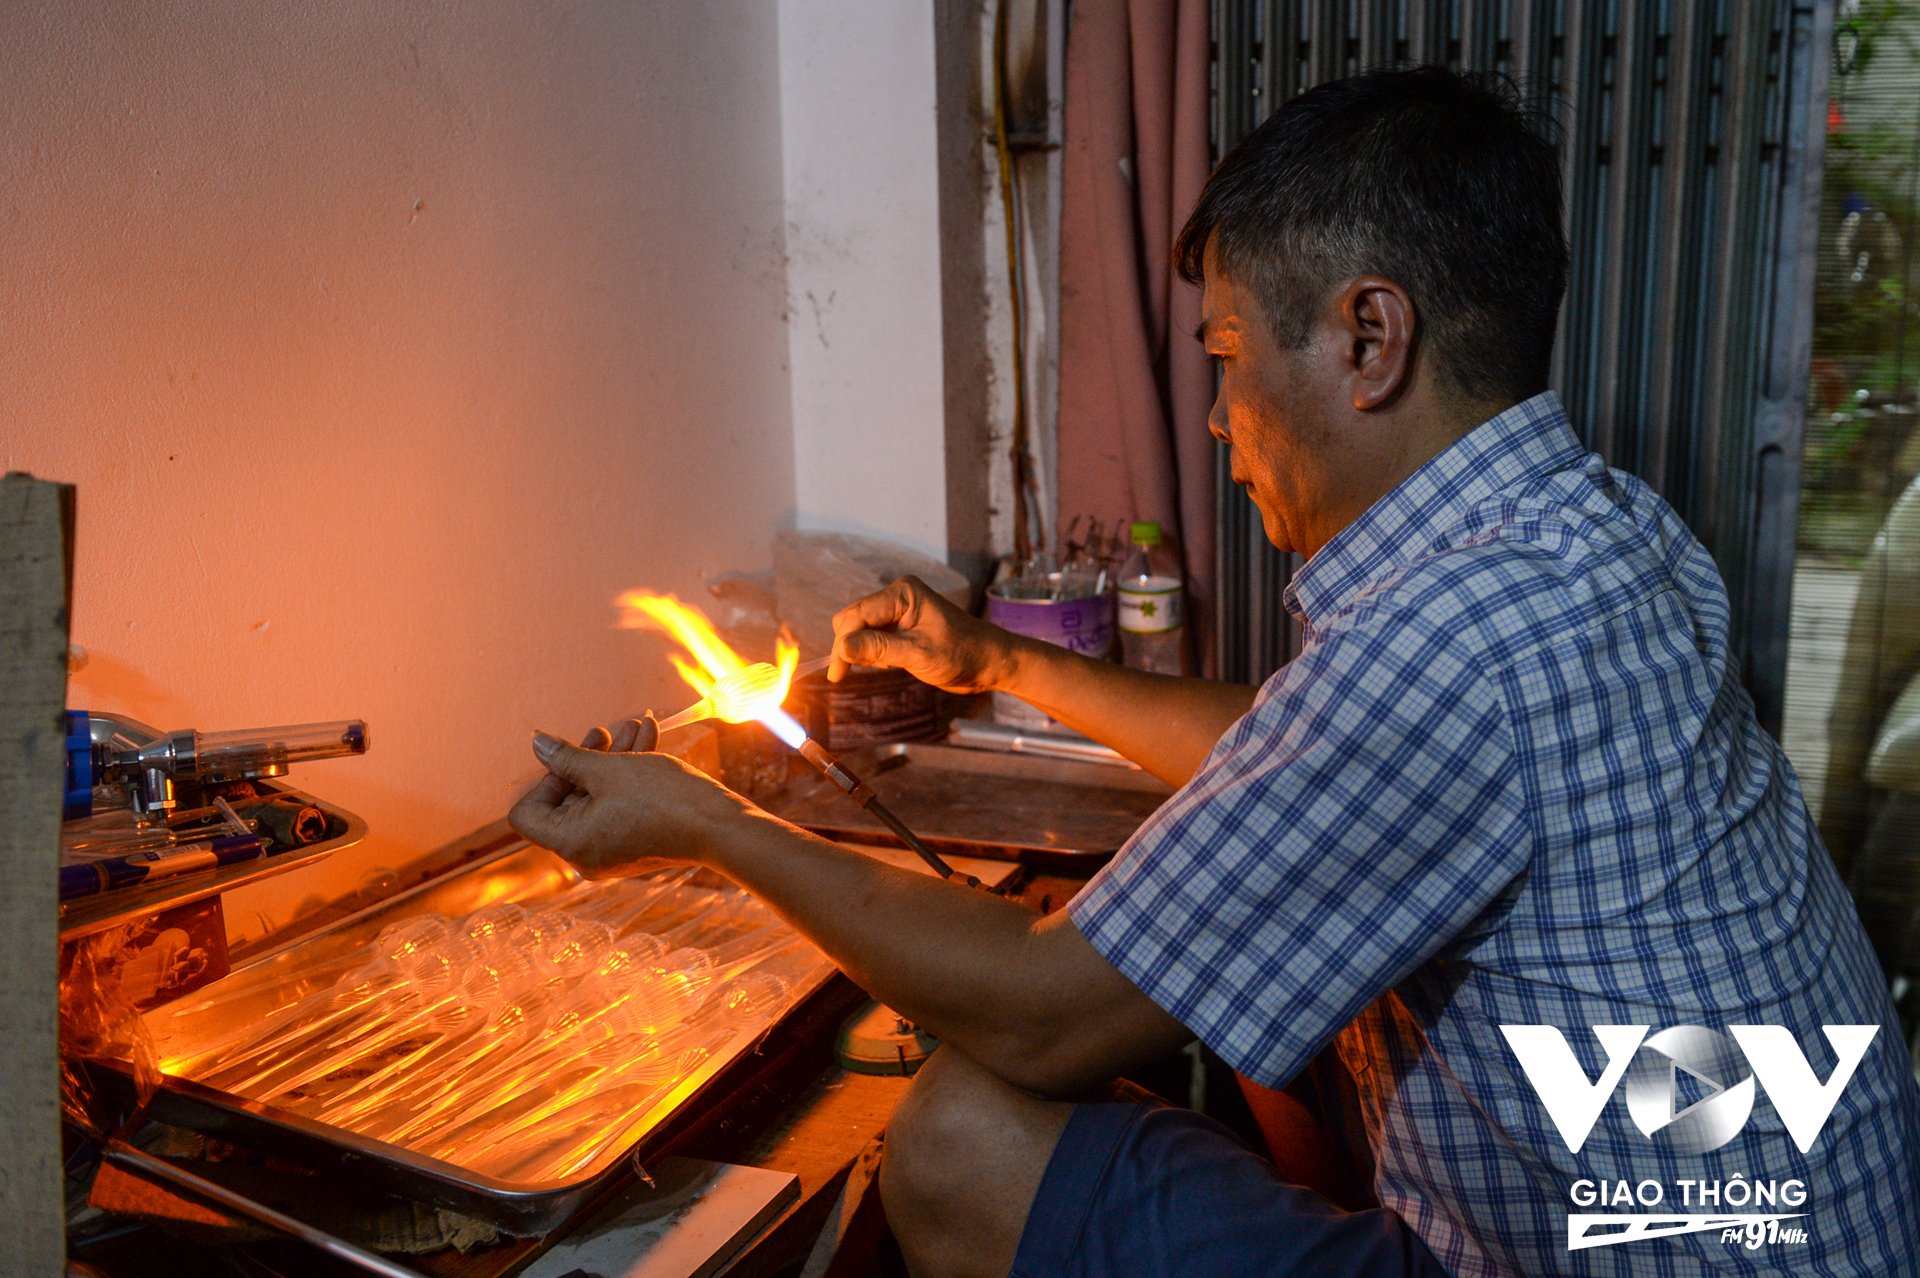 Tại xưởng của chị Tạ Thị Ngà, anh Lương Văn Trãi (chồng của chị Ngà) là người nắm chắc nhất những kỹ năng thổi thủy tinh, từ thủ công đến vận hành bằng máy.